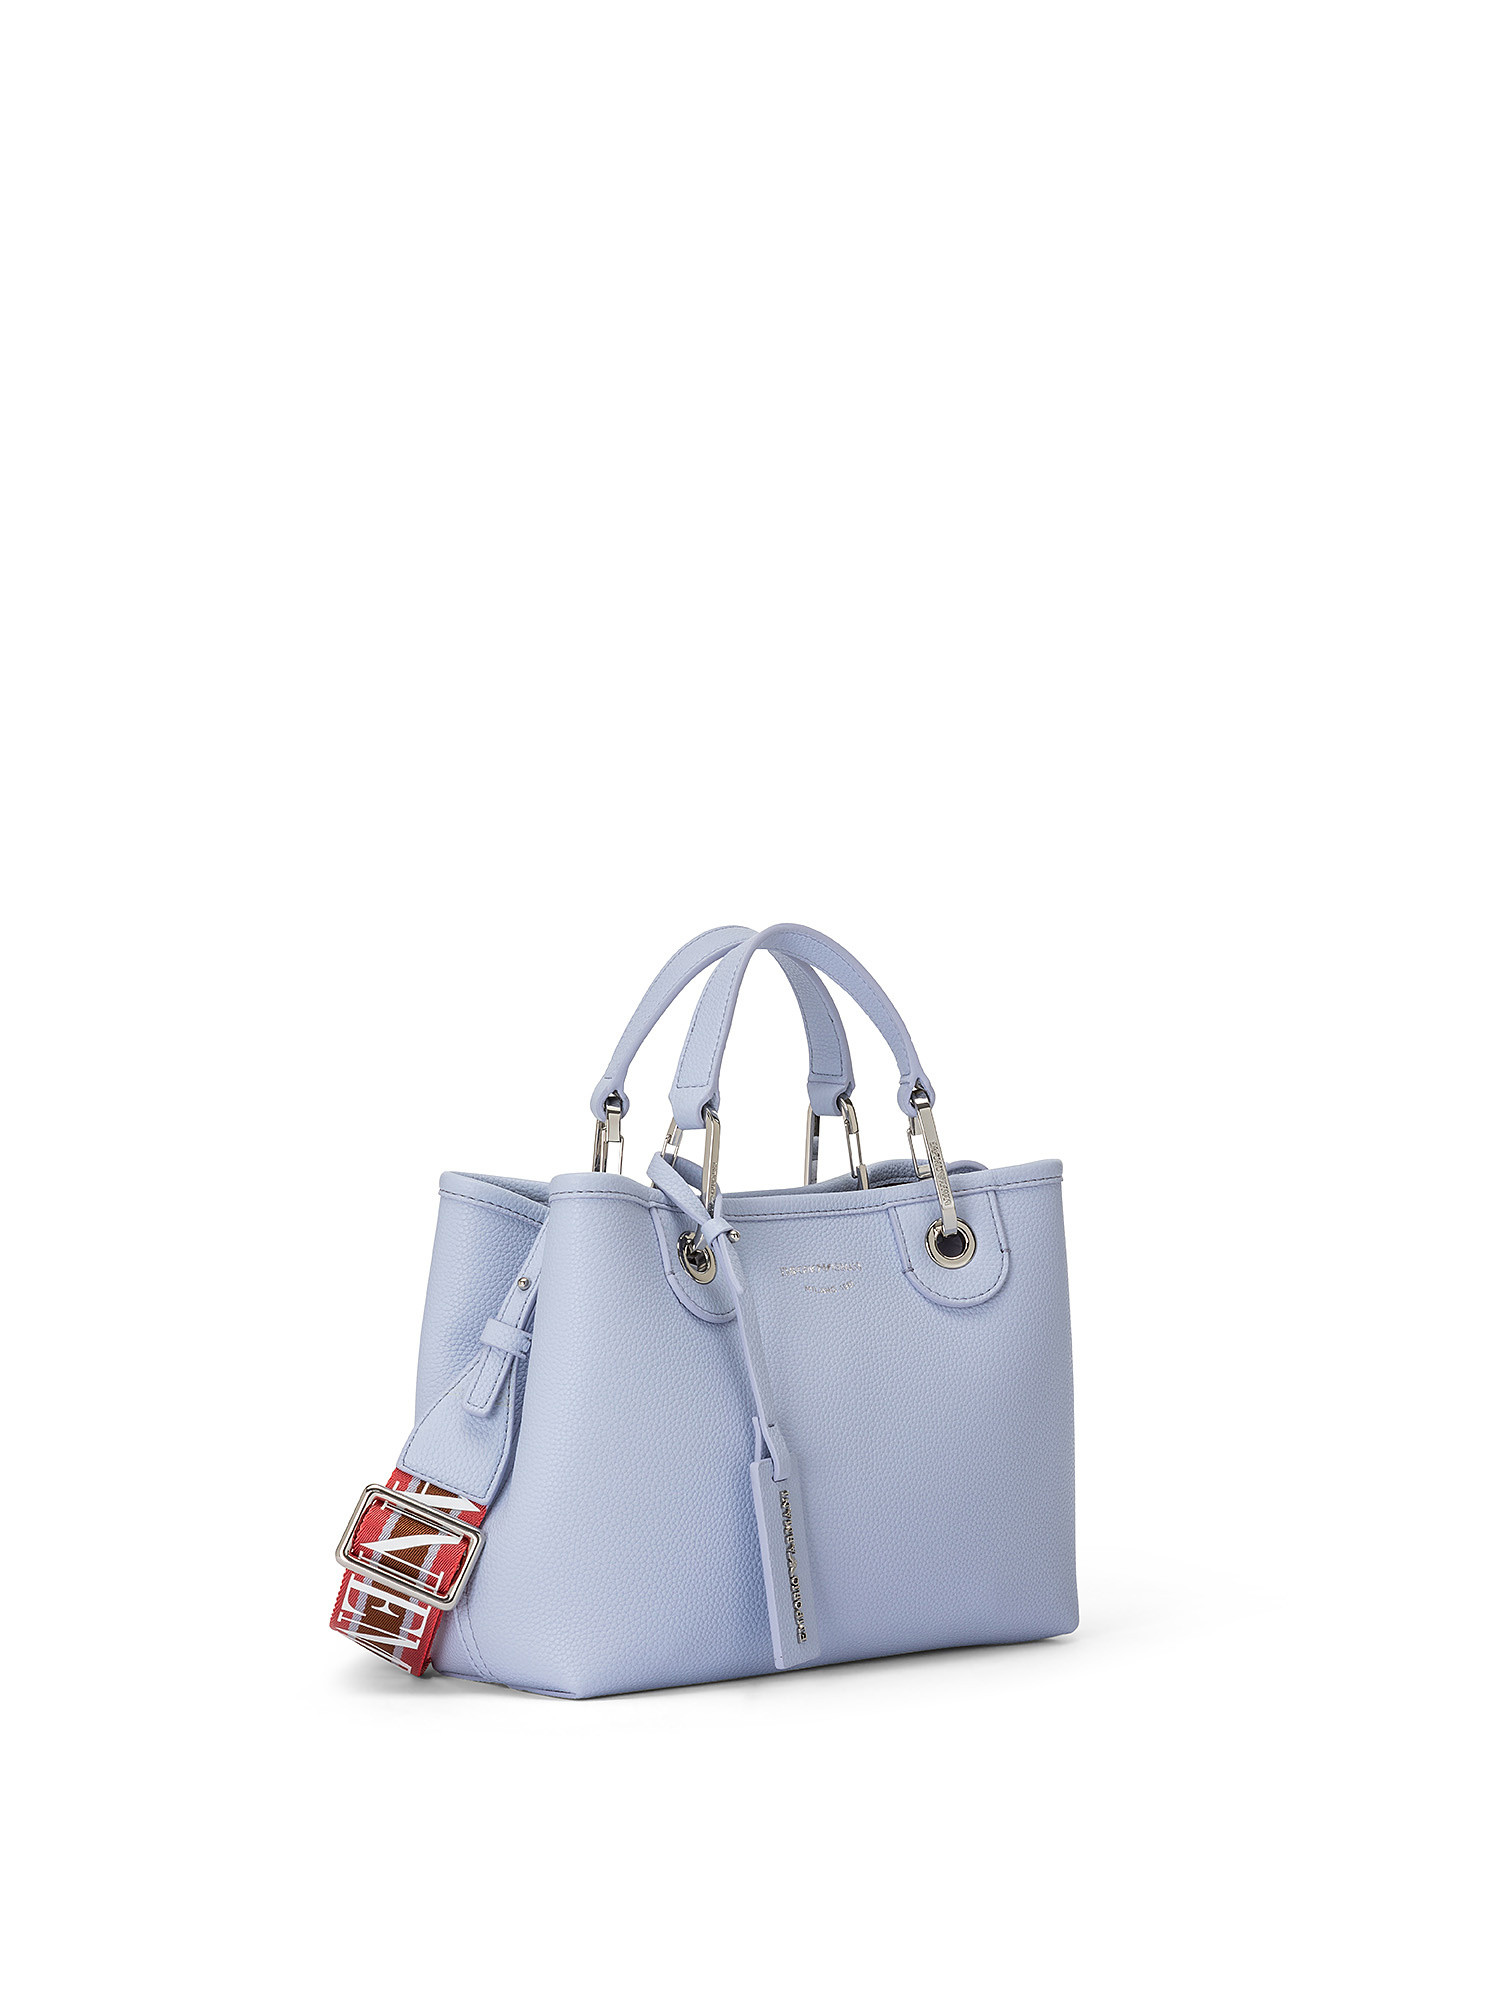 Shopping bag, Azzurro, large image number 1